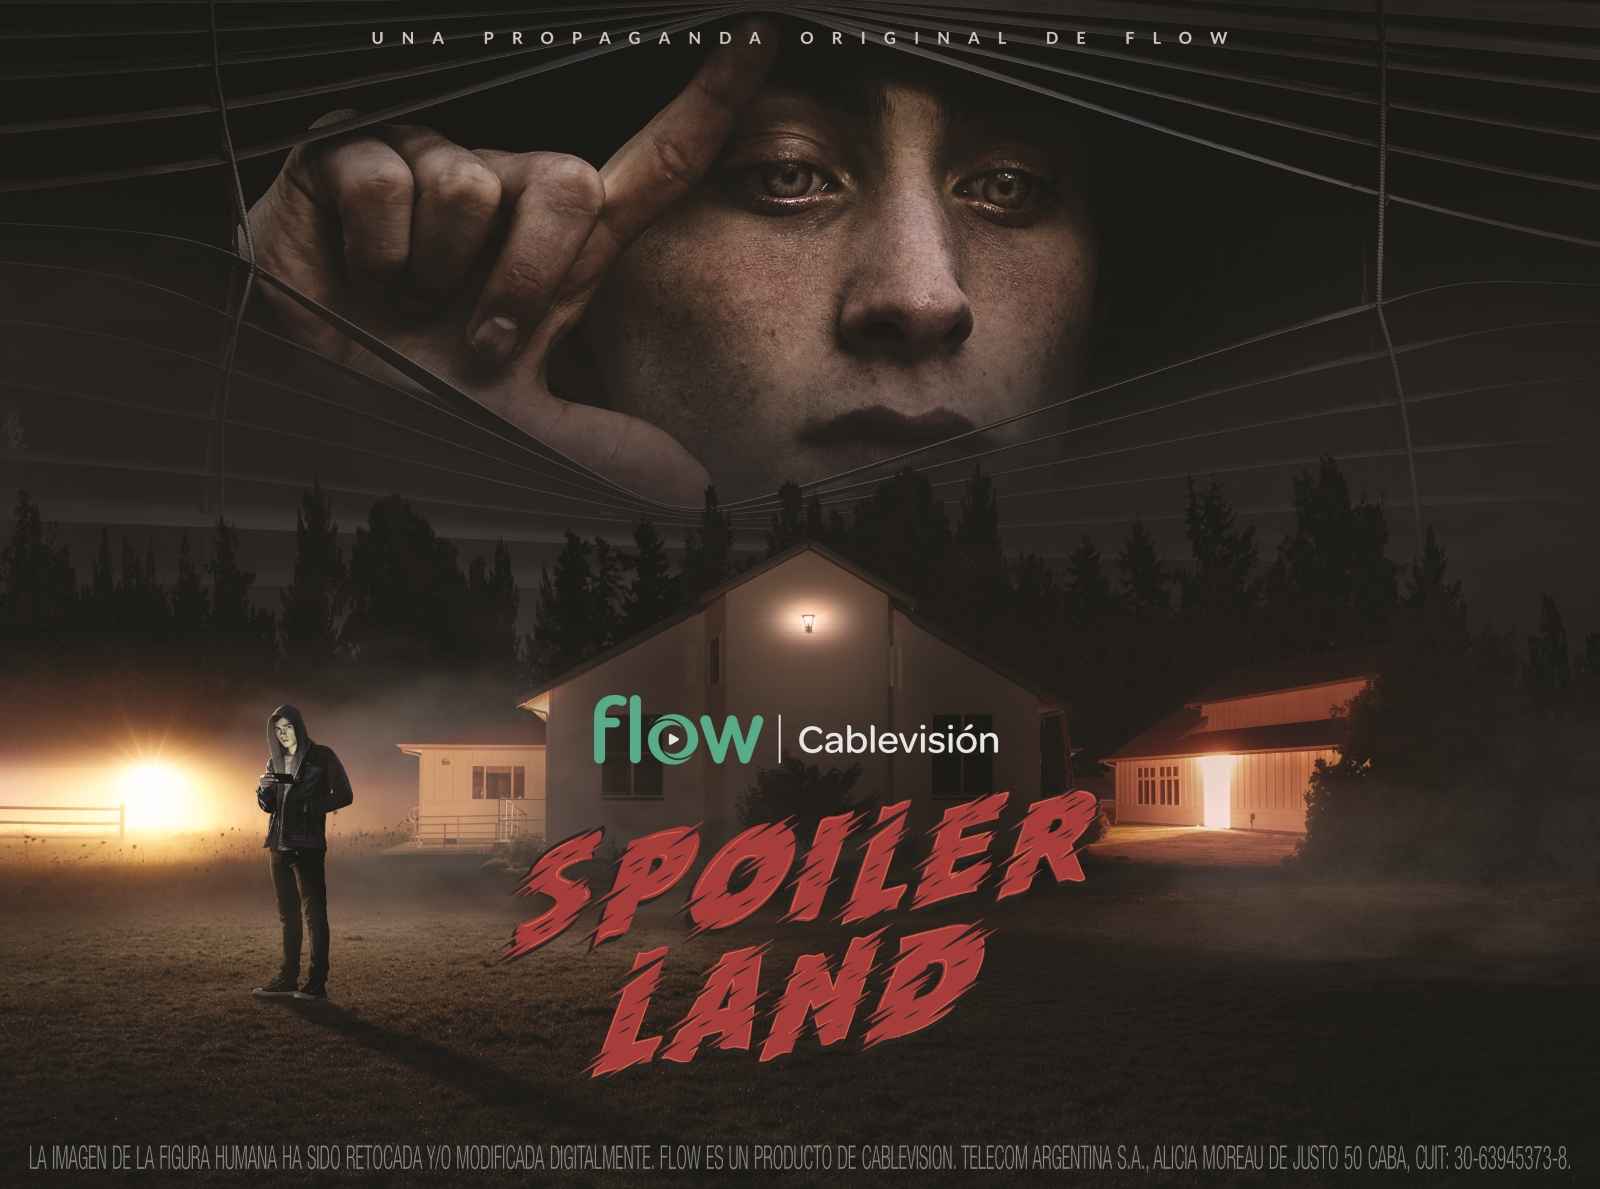 Portada de “Spoiler Land”, nueva campaña de Cablevisión Flow creada por Don